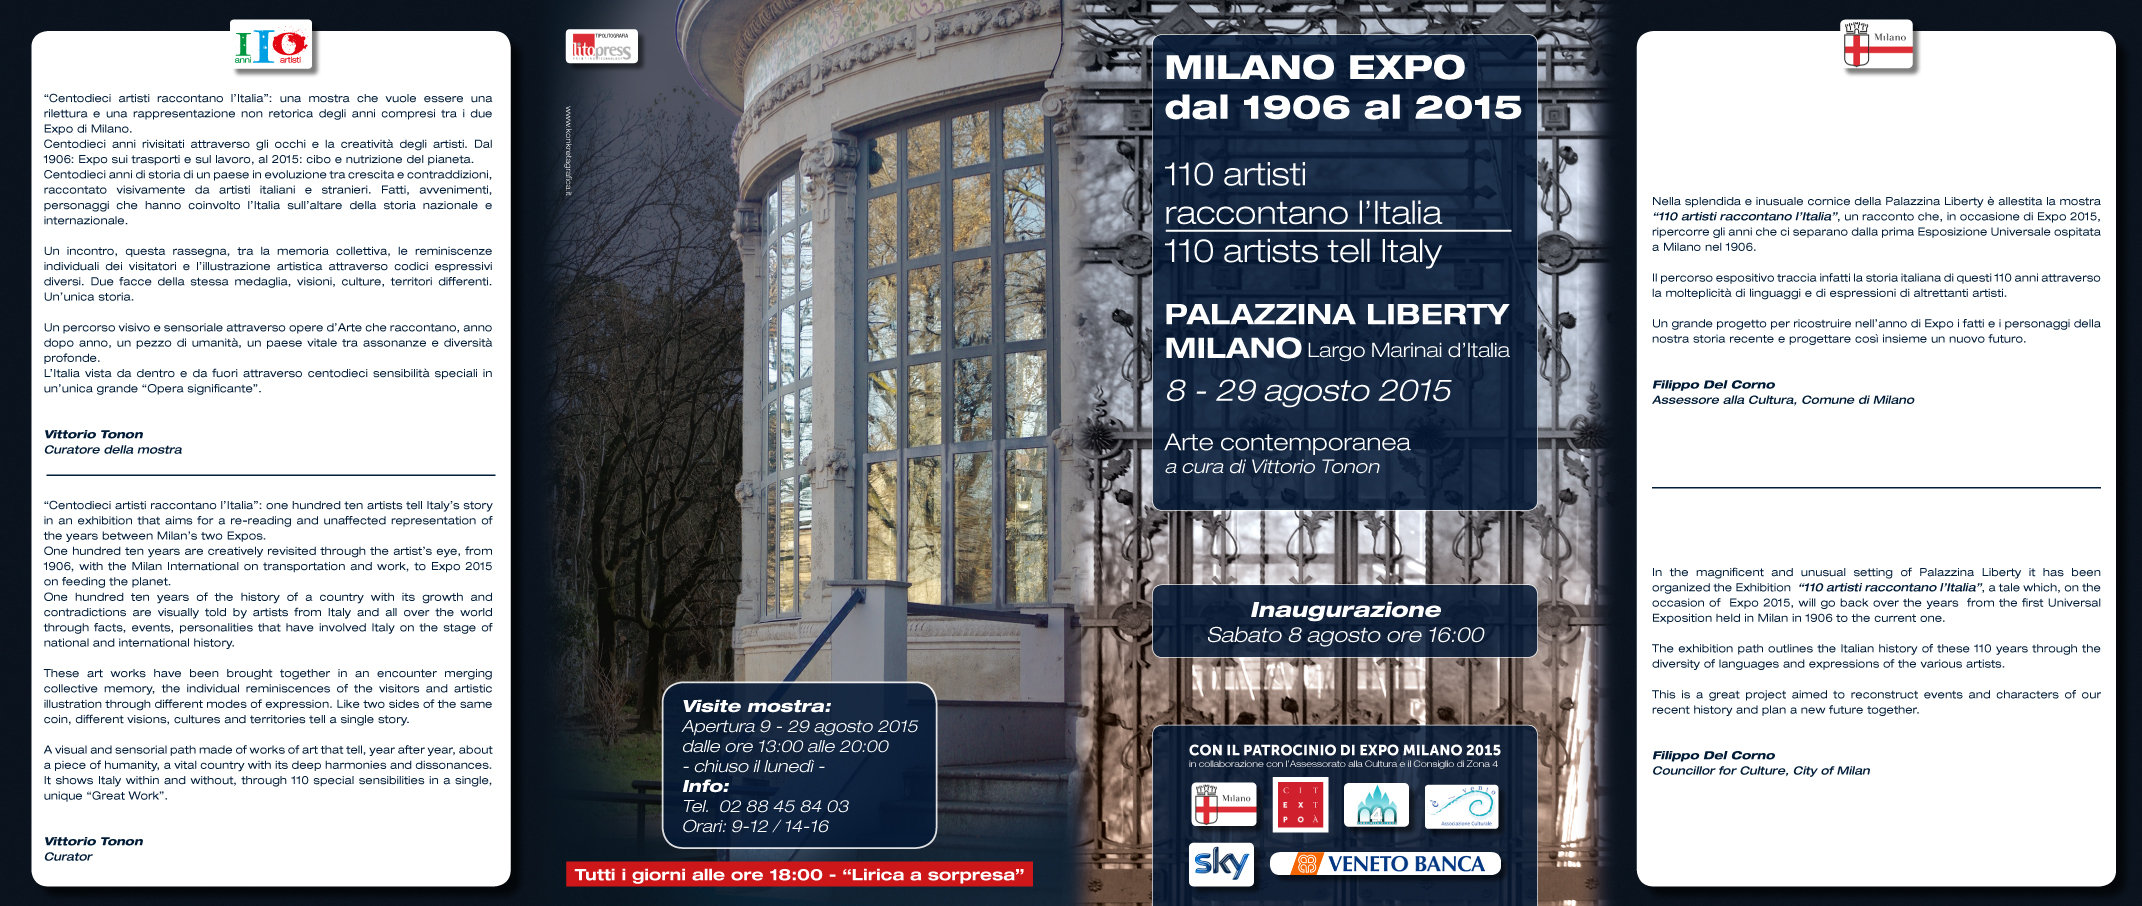 Milano Expo dal 1906 al 2015. 110 artisti raccontano l’Italia